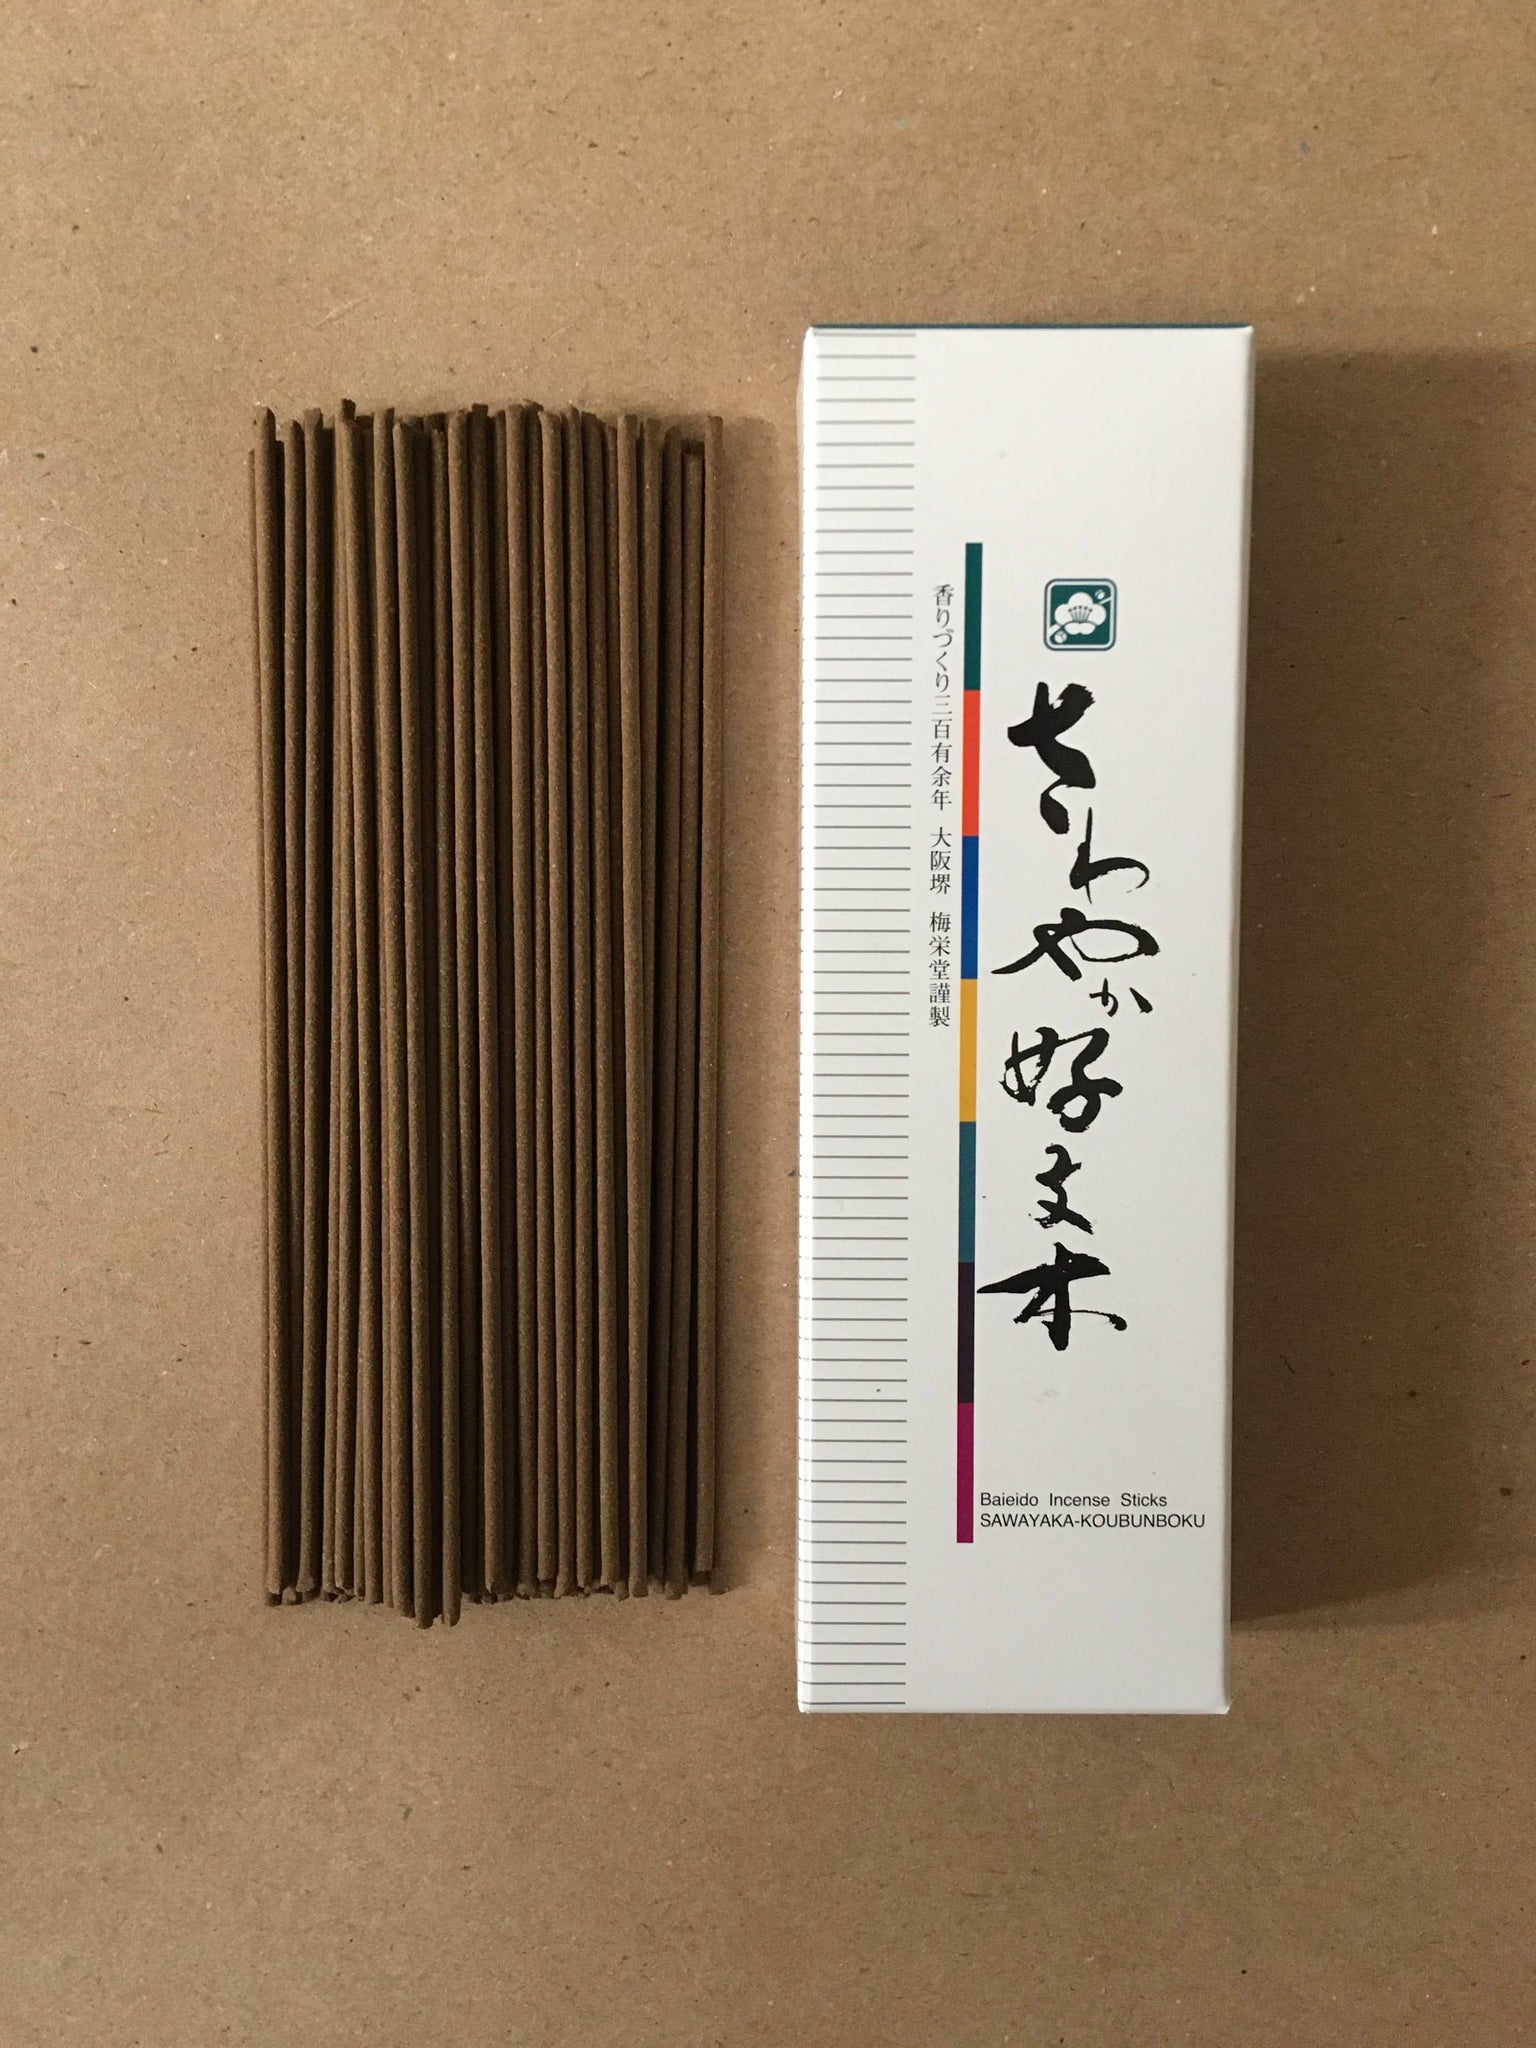 Sawayaka (Spicy) Kobunboku, 80 Sticks Incense | Baieido